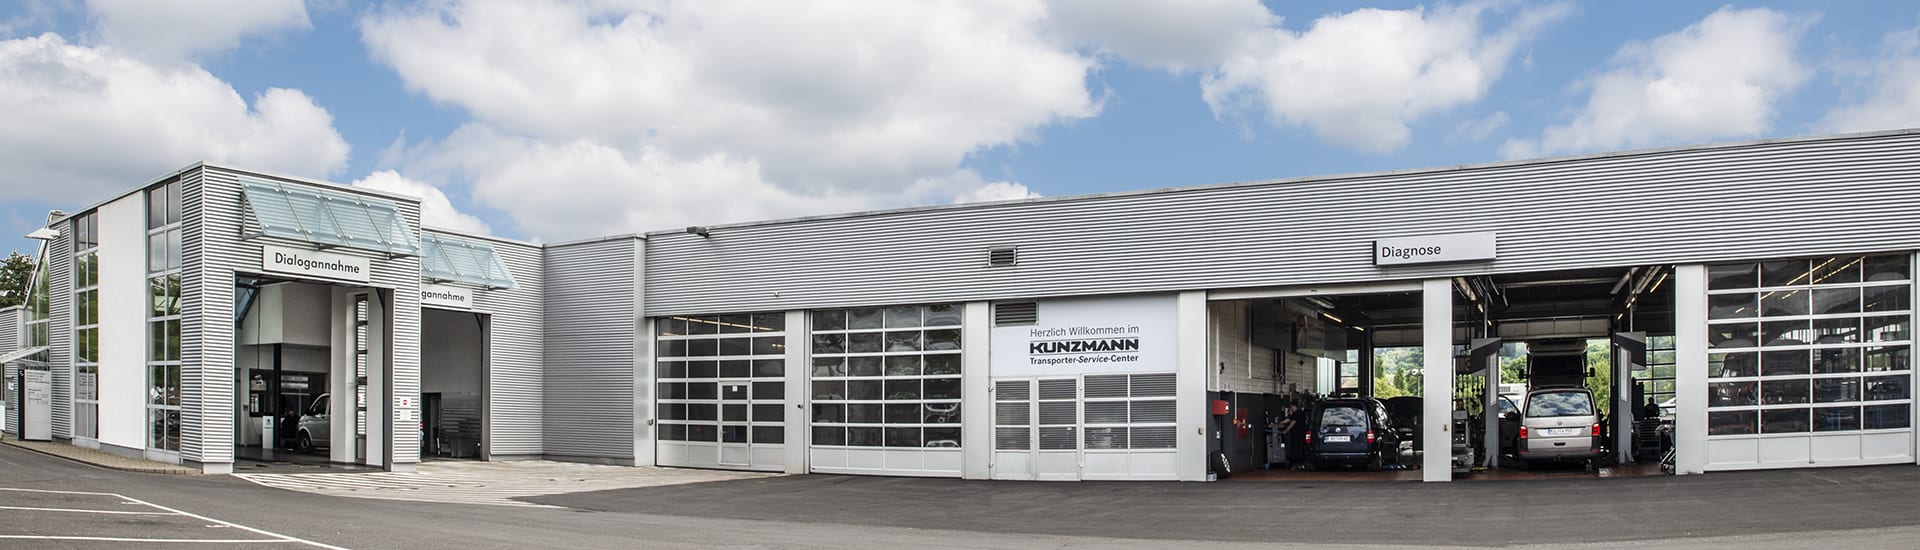 Klimaanlagenwartung im Autohaus Kunzmann in Aschaffenburg-Nilkheim